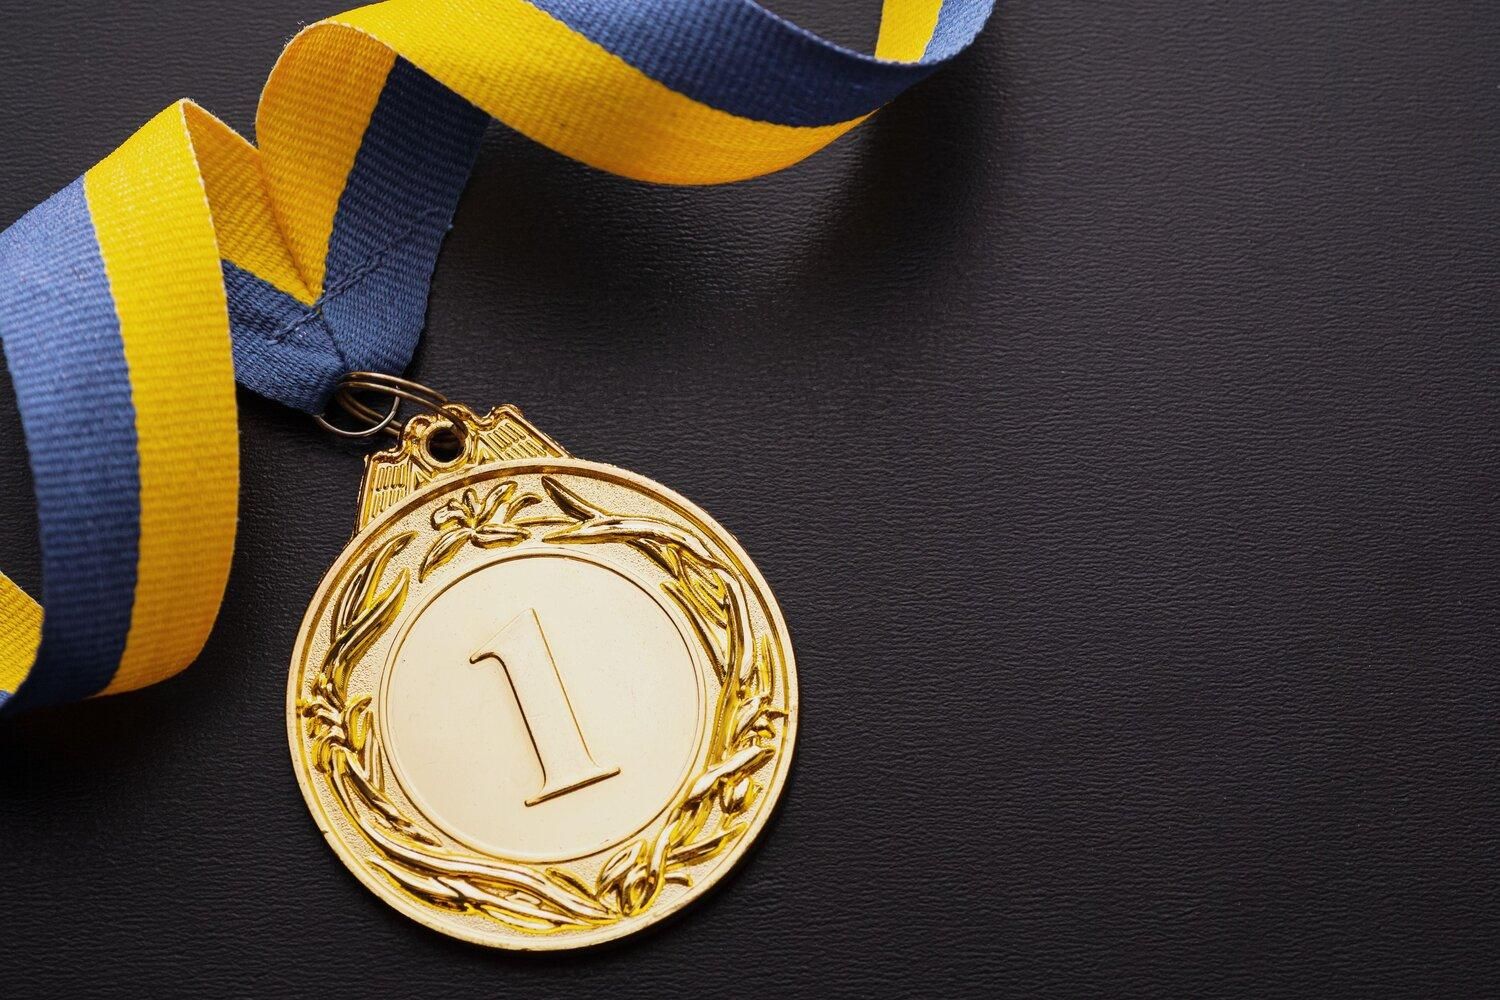 Українські школярі отримали золоті медалі на фестивалі інженерії, науки та технологій - Україна новини - Освіта